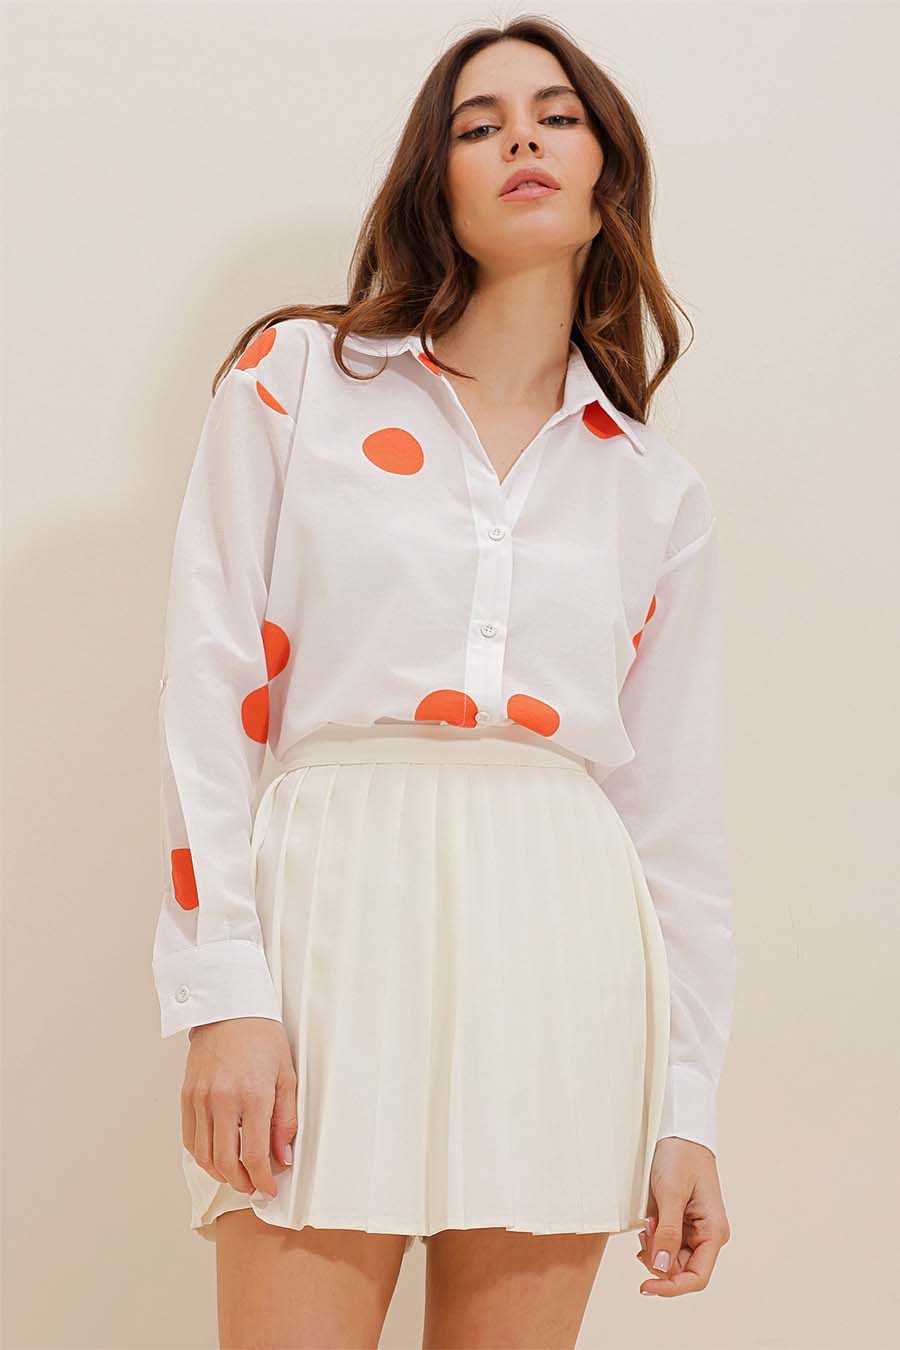 Γυναικείο πουκάμισο Millie, Λευκό/Πορτοκάλι 3